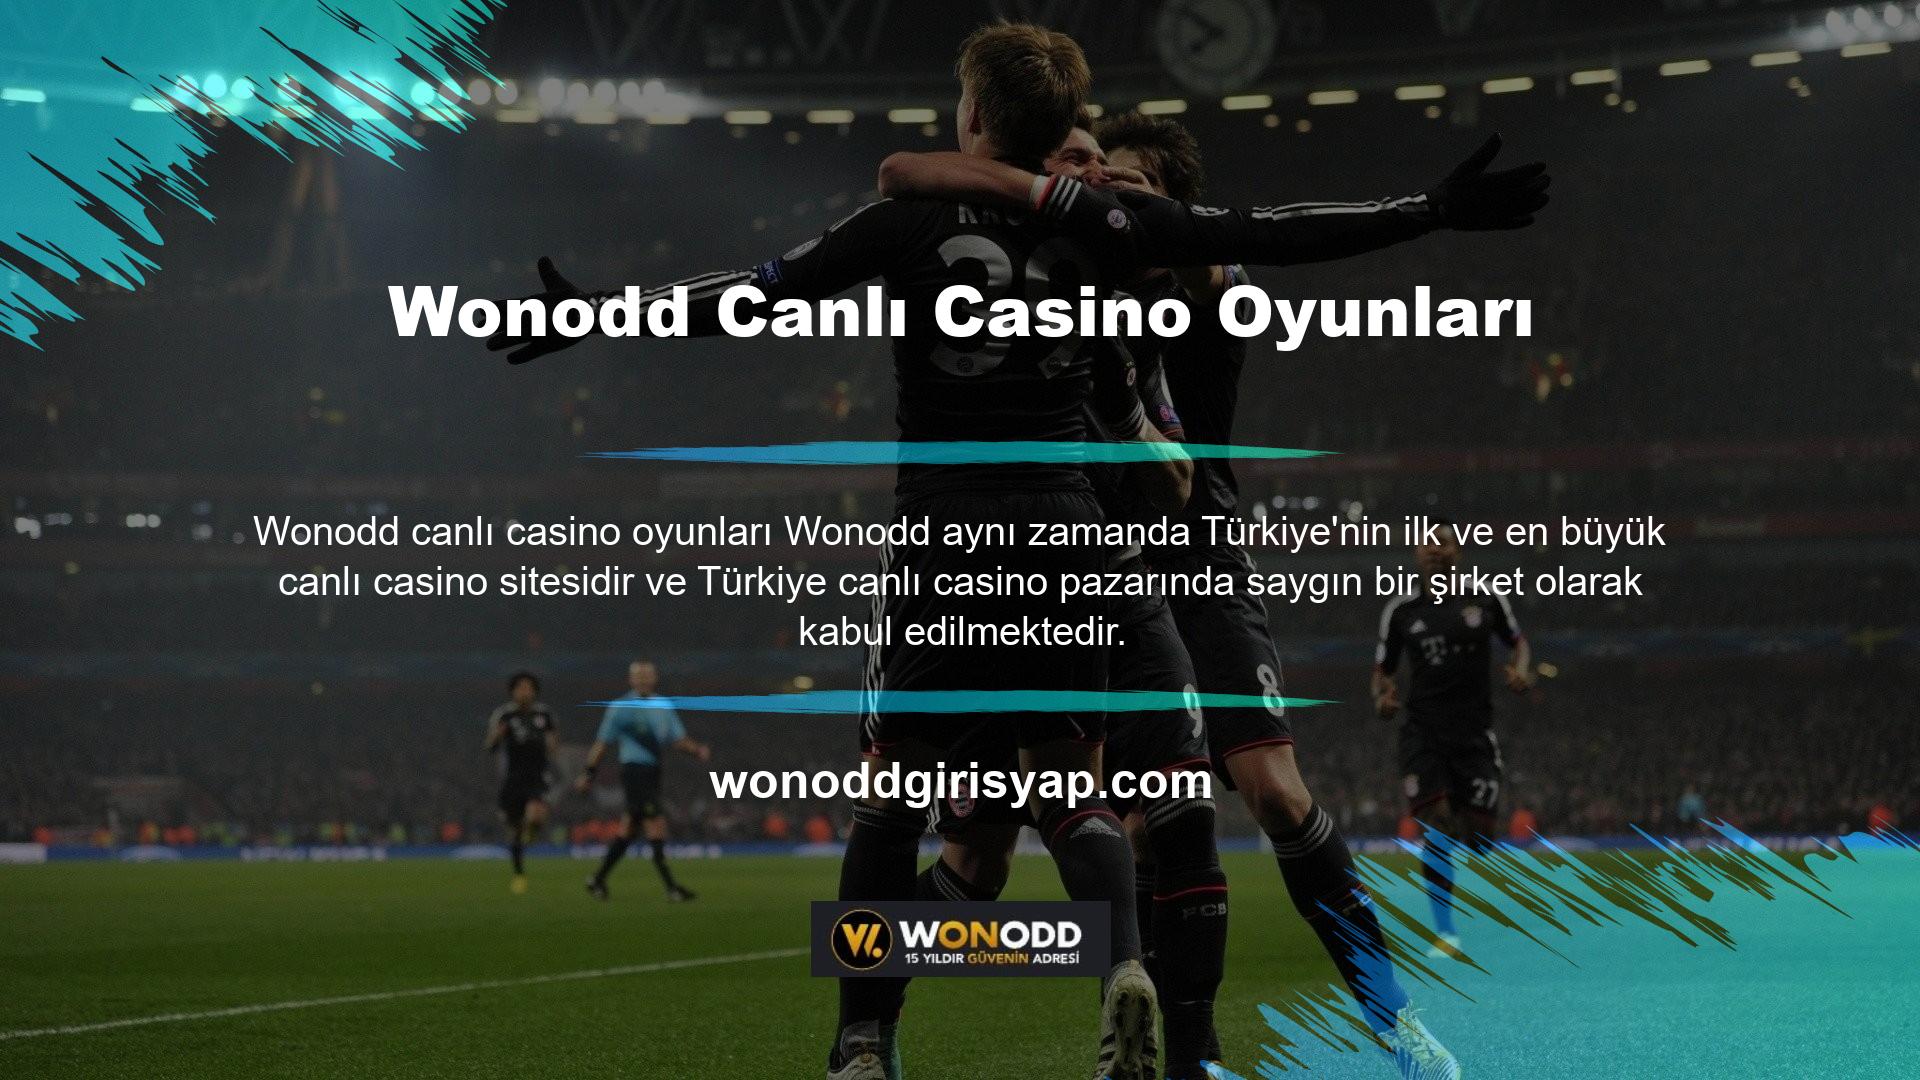 Wonodd, online casino oyunlarını gururla Türkiye'ye getiriyor ve tüm oyun severler için heyecanlı dakikalar yaşatıyor